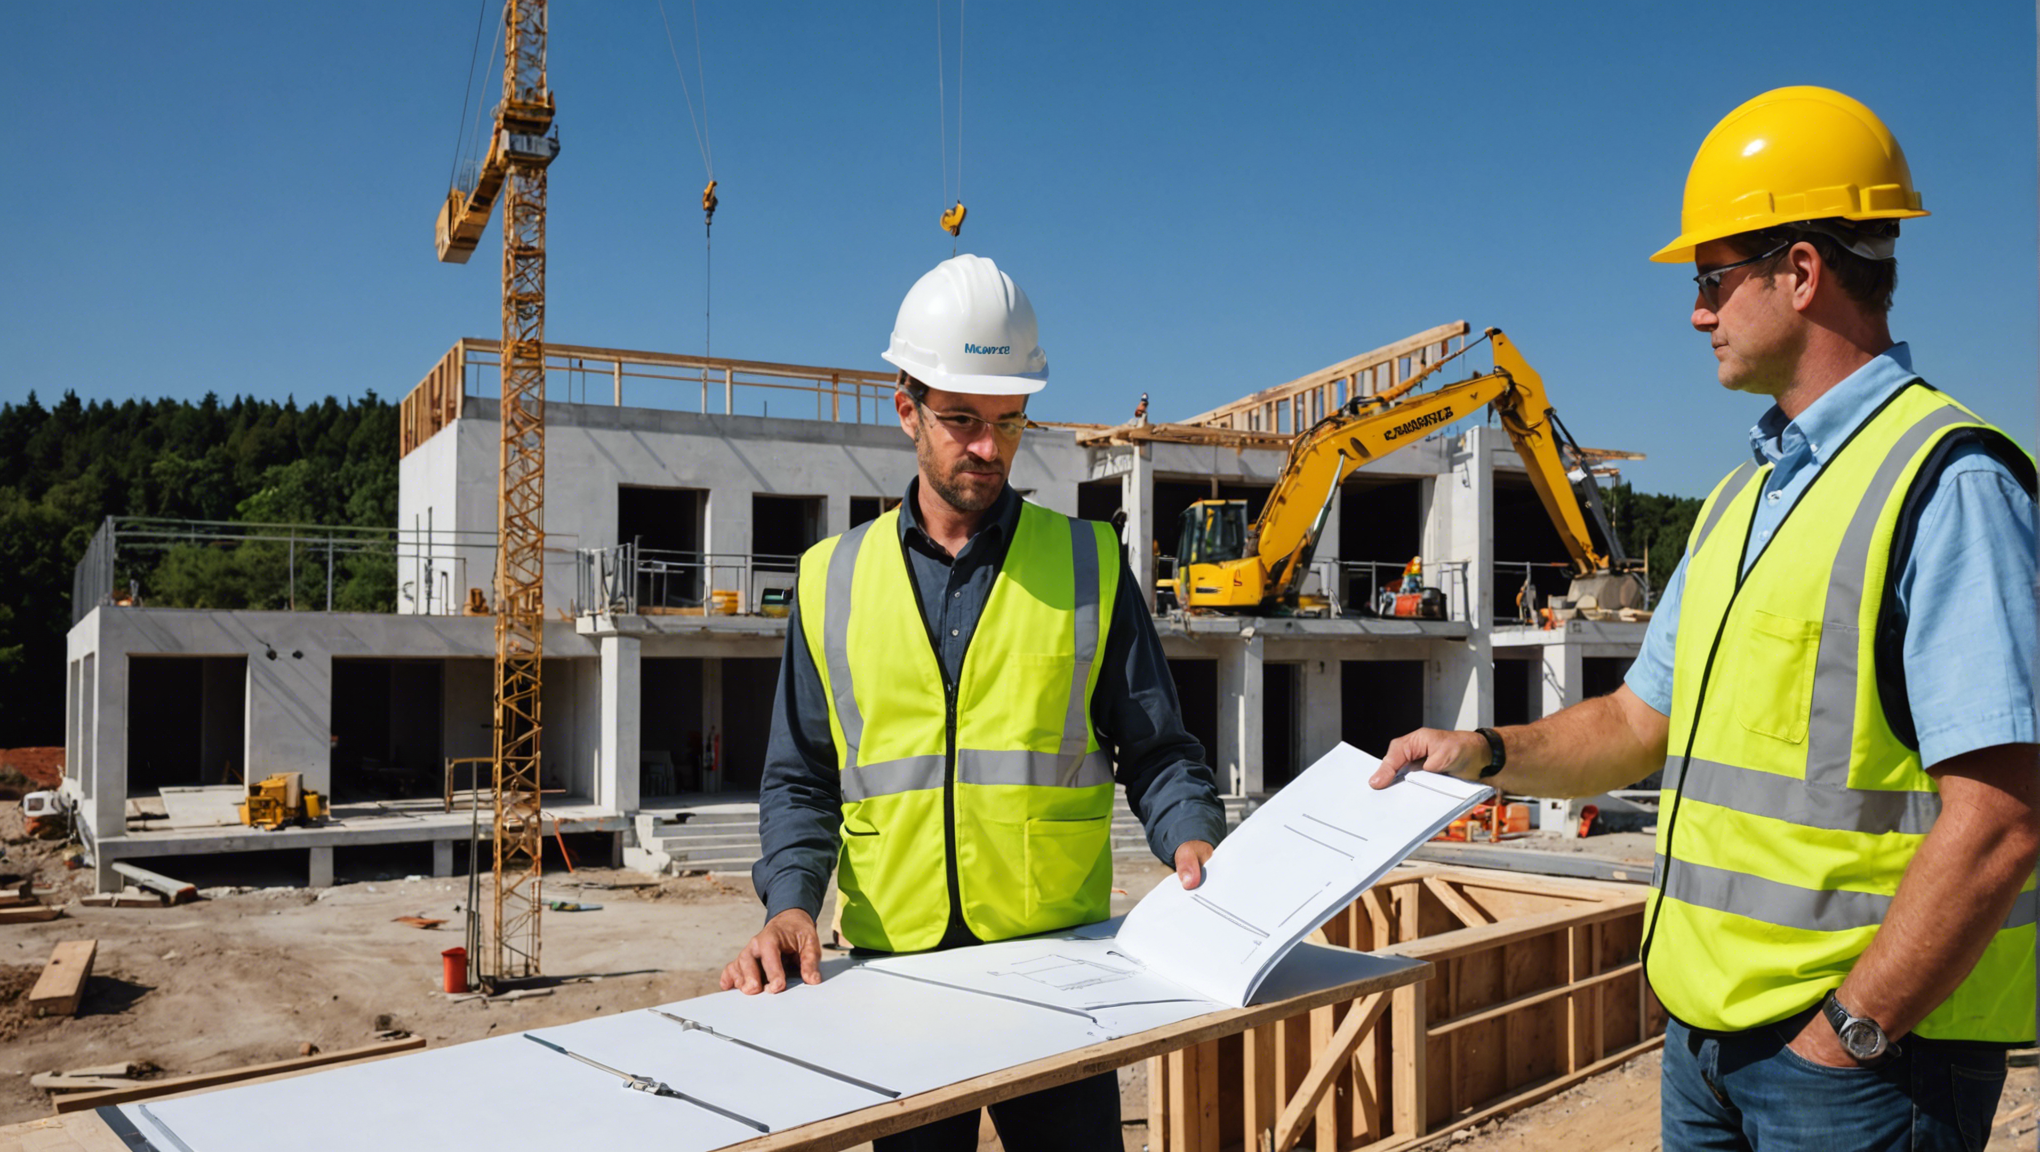 devenez ingénieur civil spécialisé dans la construction de maisons avec ce programme complet et pratique. acquérez les compétences nécessaires pour concevoir, gérer et superviser la construction de projets résidentiels.